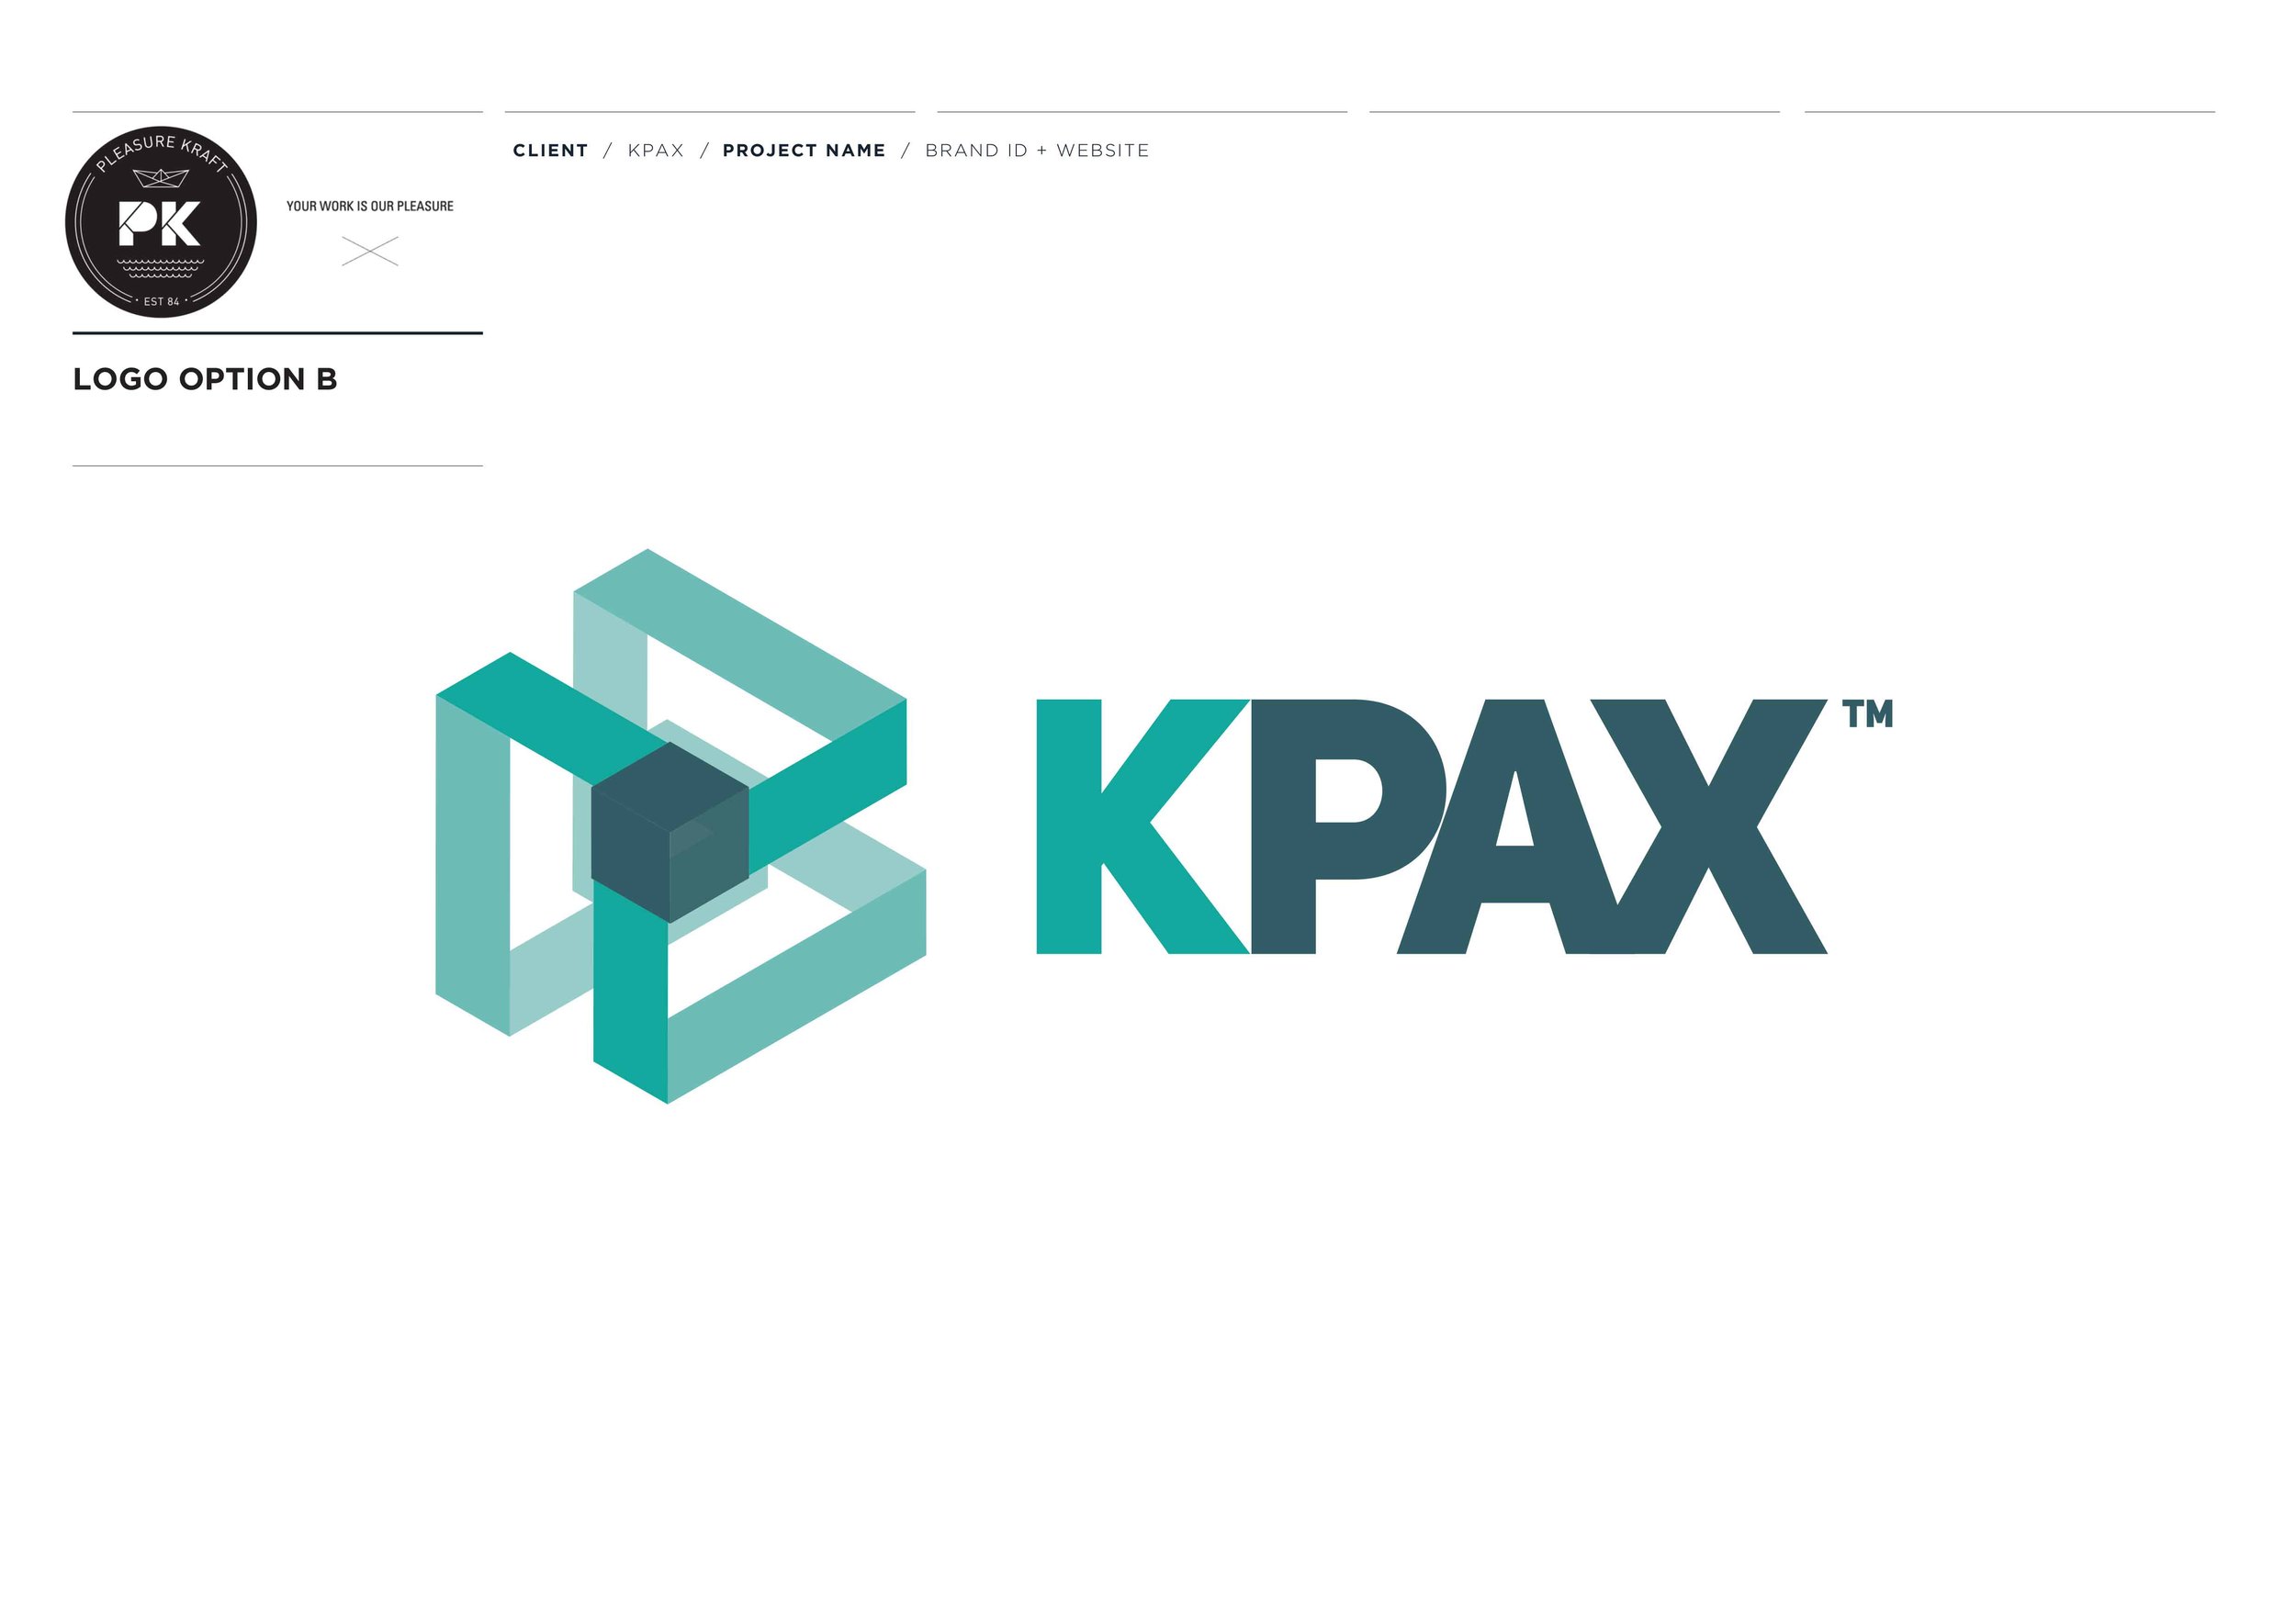 KPAX LOGO+GRAPHIC CONCEPTS PRES-5 copy.jpg